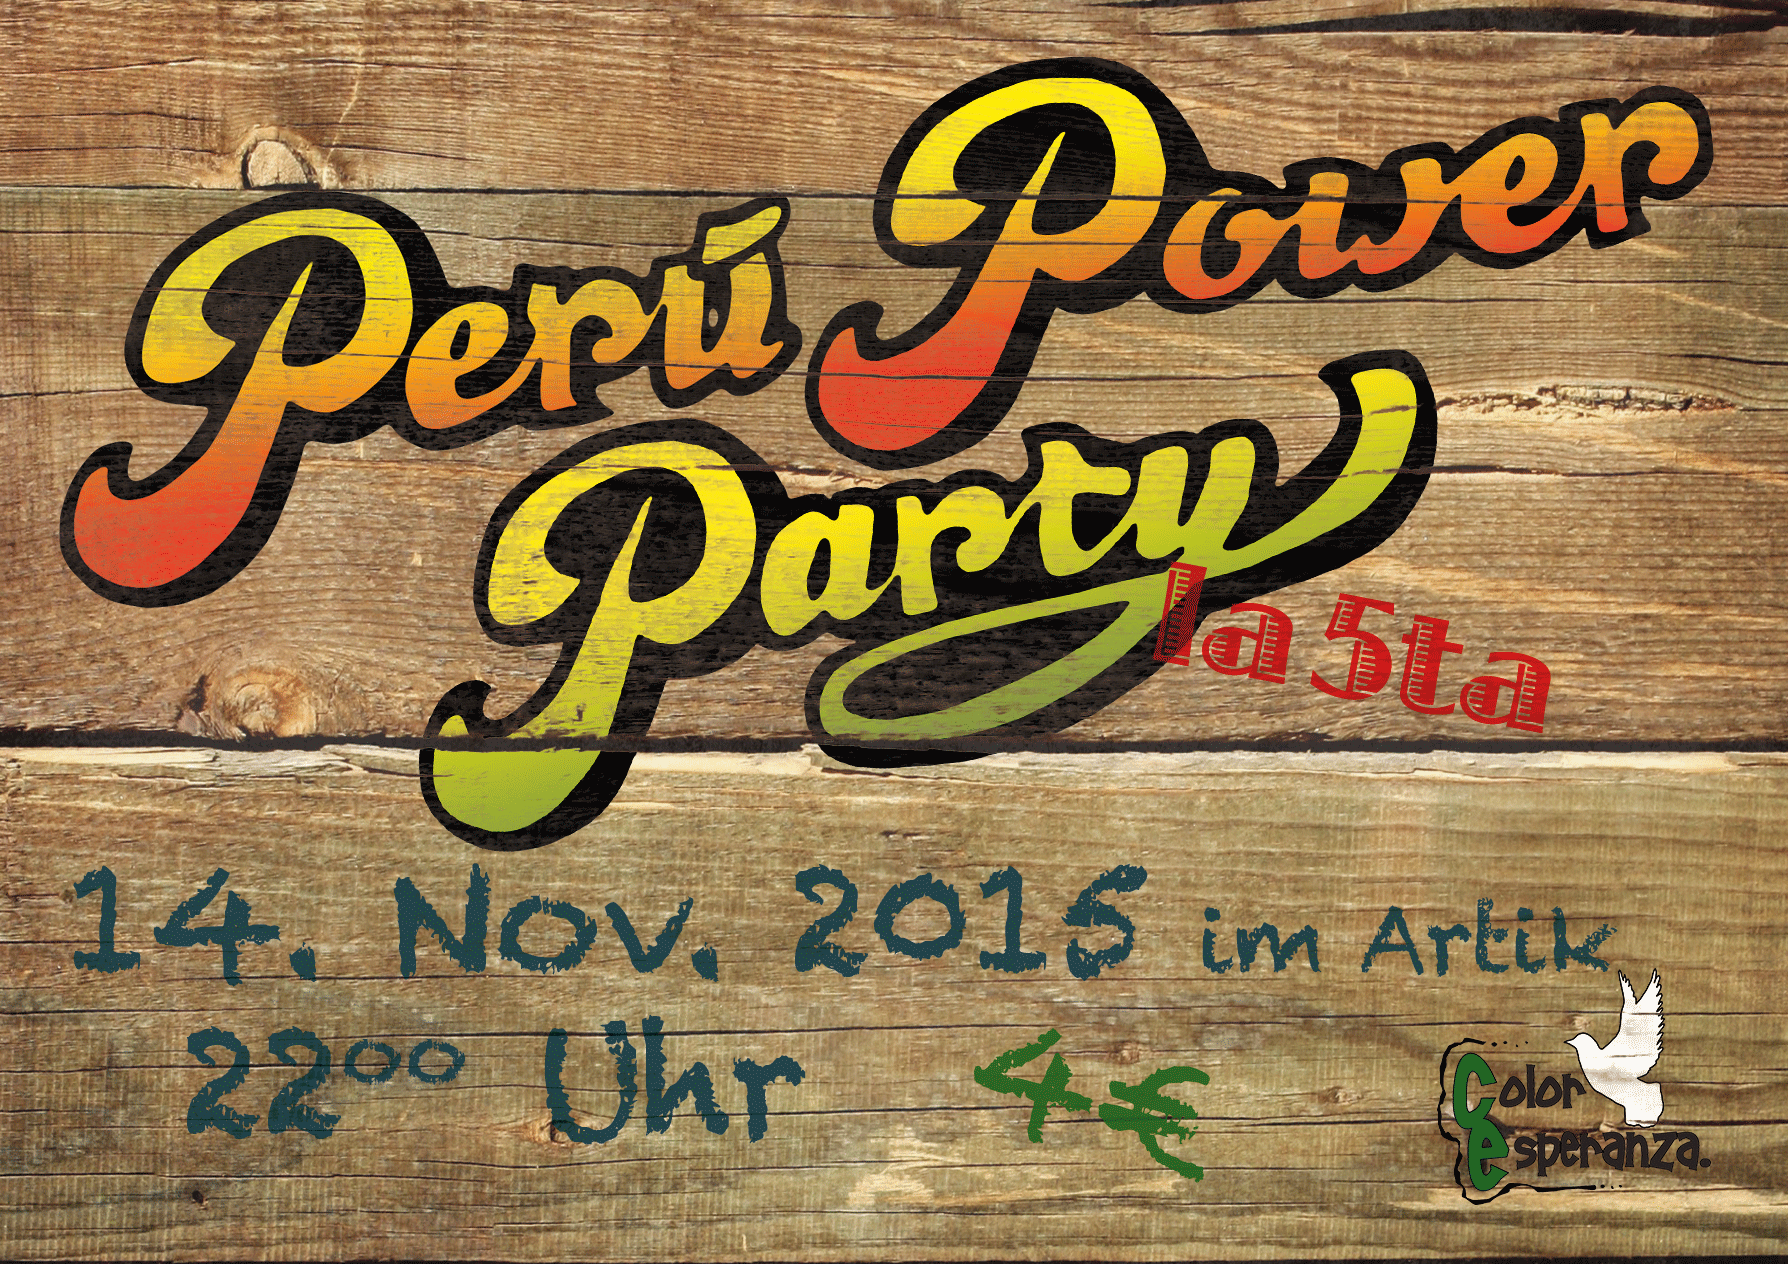 Peru Power Party la 5ta